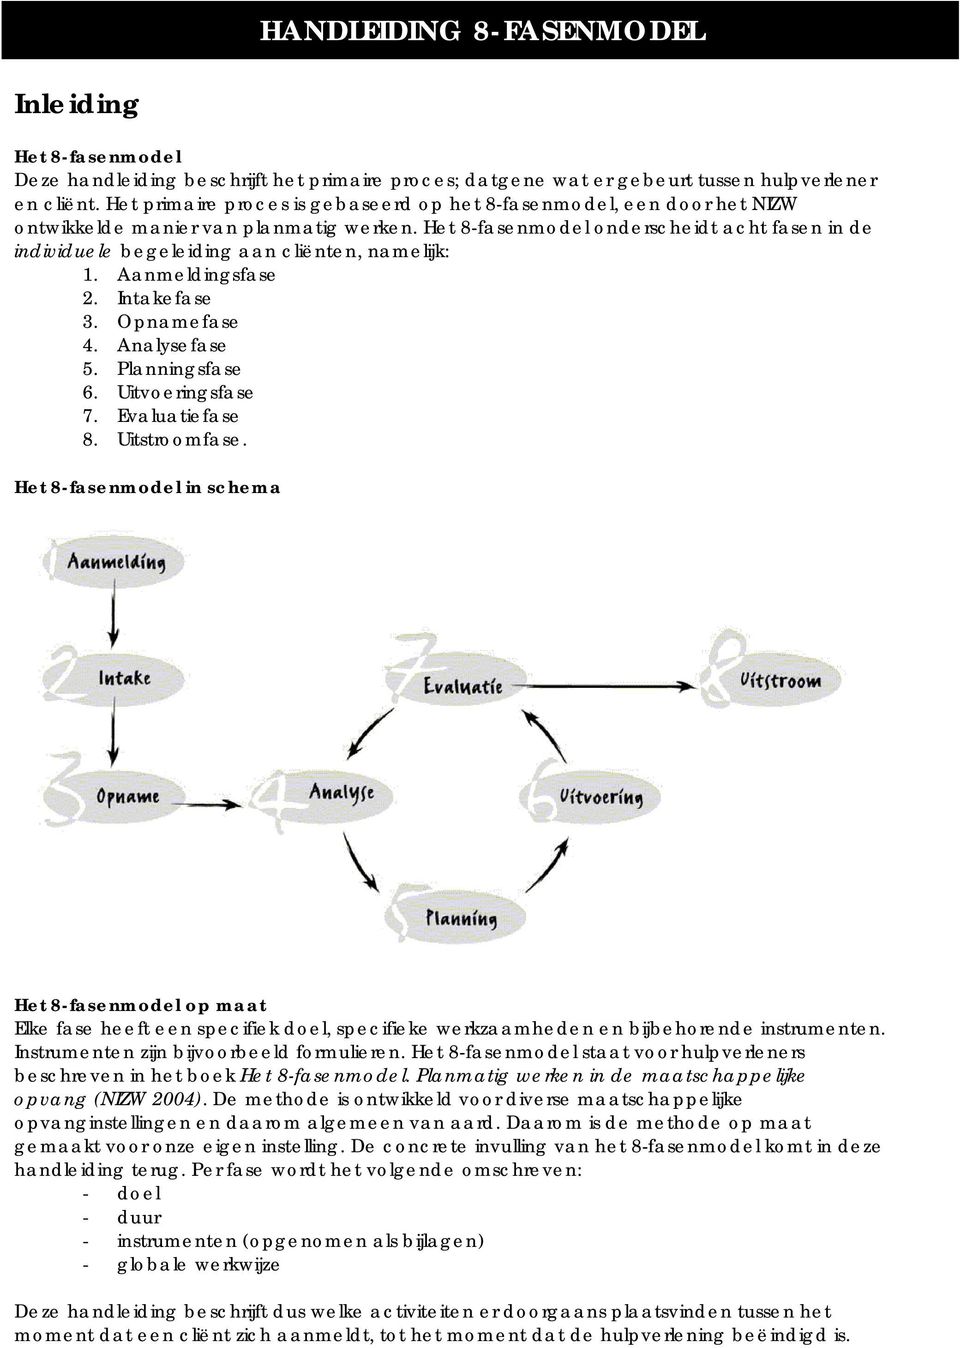 Het 8-fasenmodel onderscheidt acht fasen in de individuele begeleiding aan cliënten, namelijk: 1. Aanmeldingsfase 2. Intakefase 3. Opnamefase 4. Analysefase 5. Planningsfase 6. Uitvoeringsfase 7.